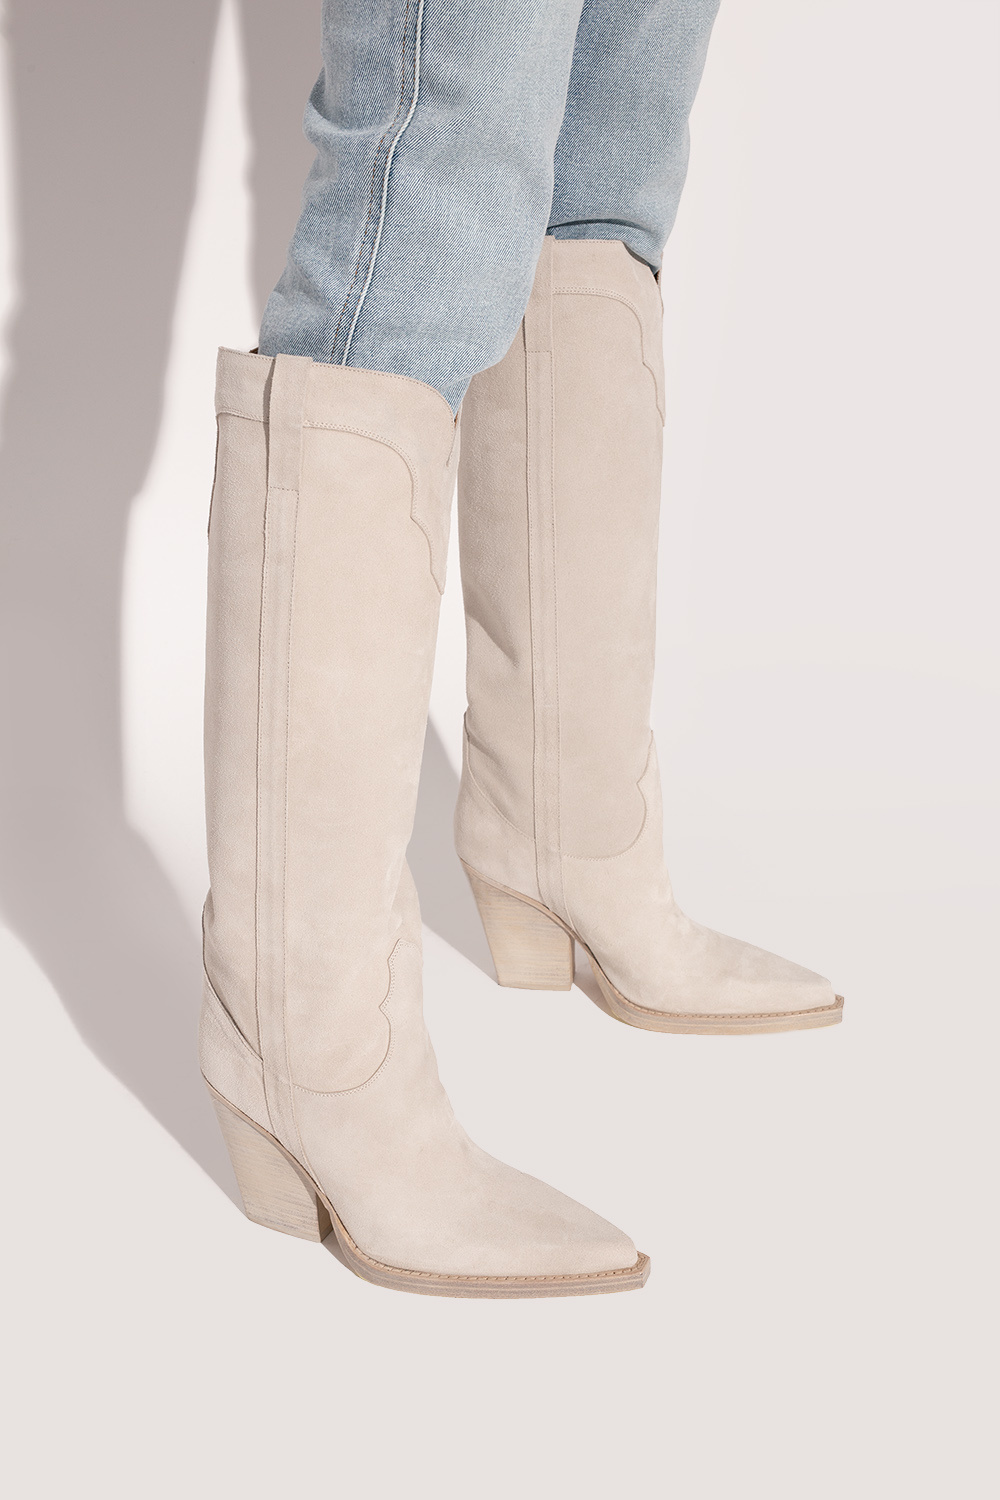 Paris Texas ‘El Dorado’ boots